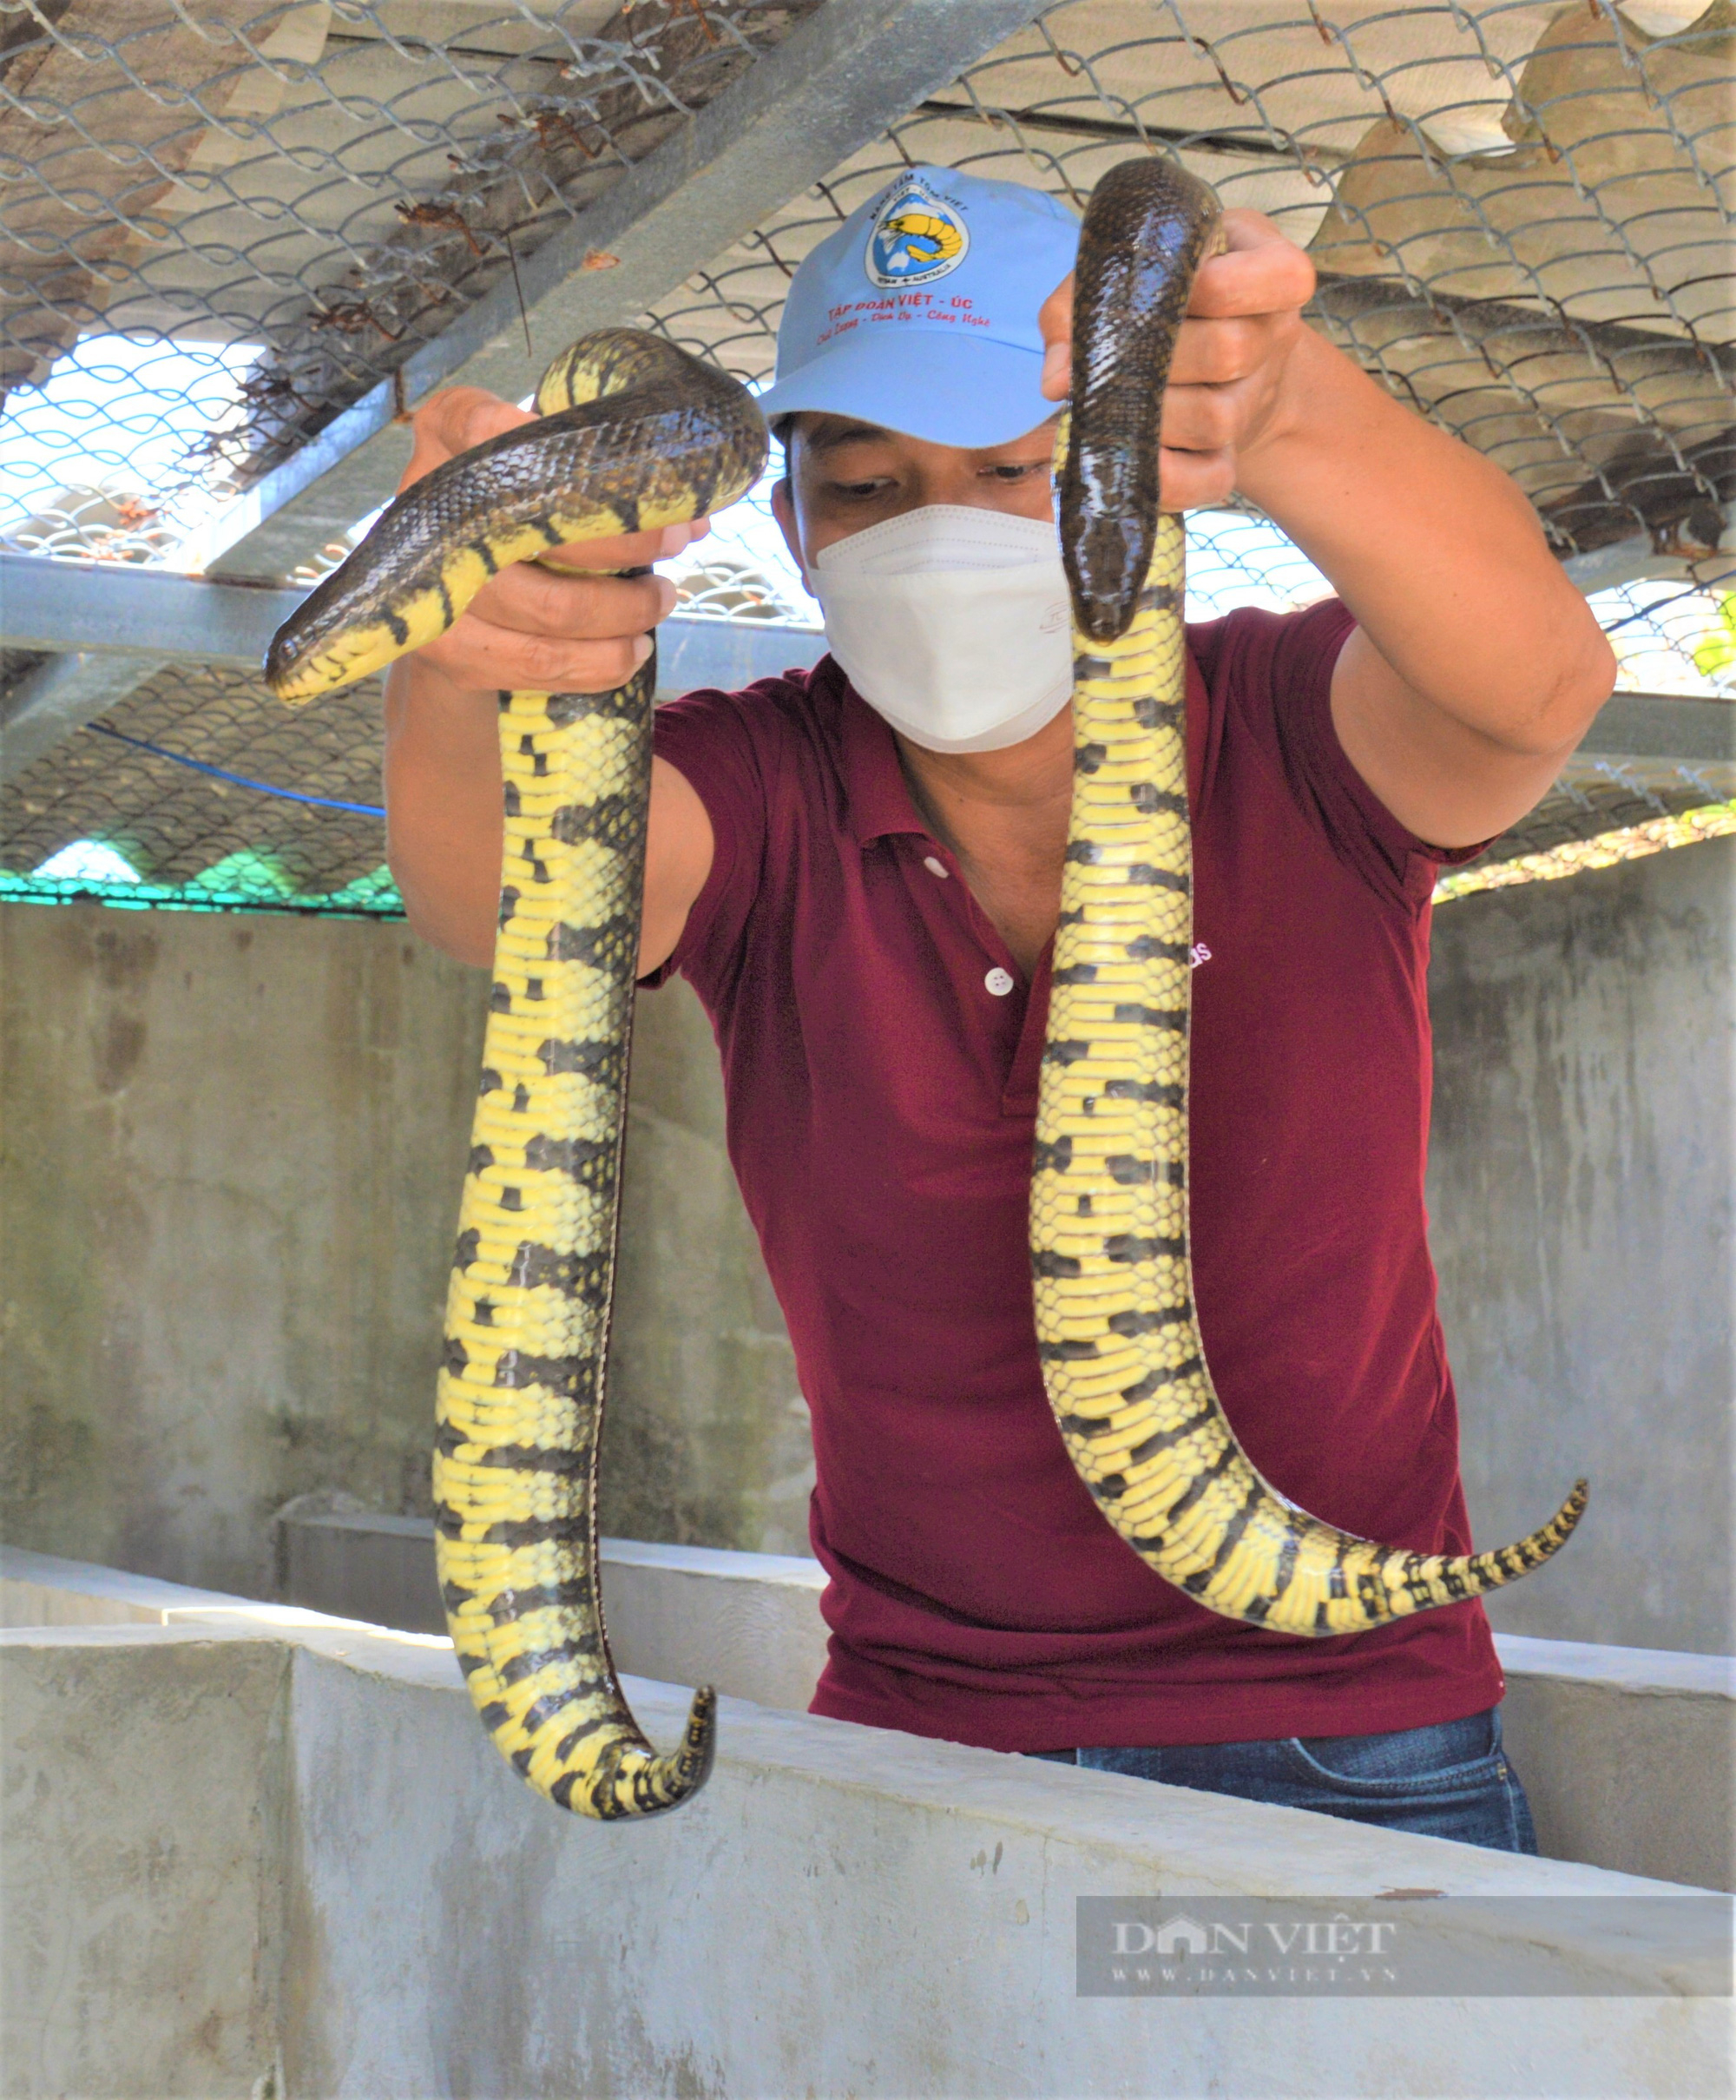 Nuôi loài rắn mập ú không có độc, trai làng bán mỗi kg nửa triệu đồng - Ảnh 4.